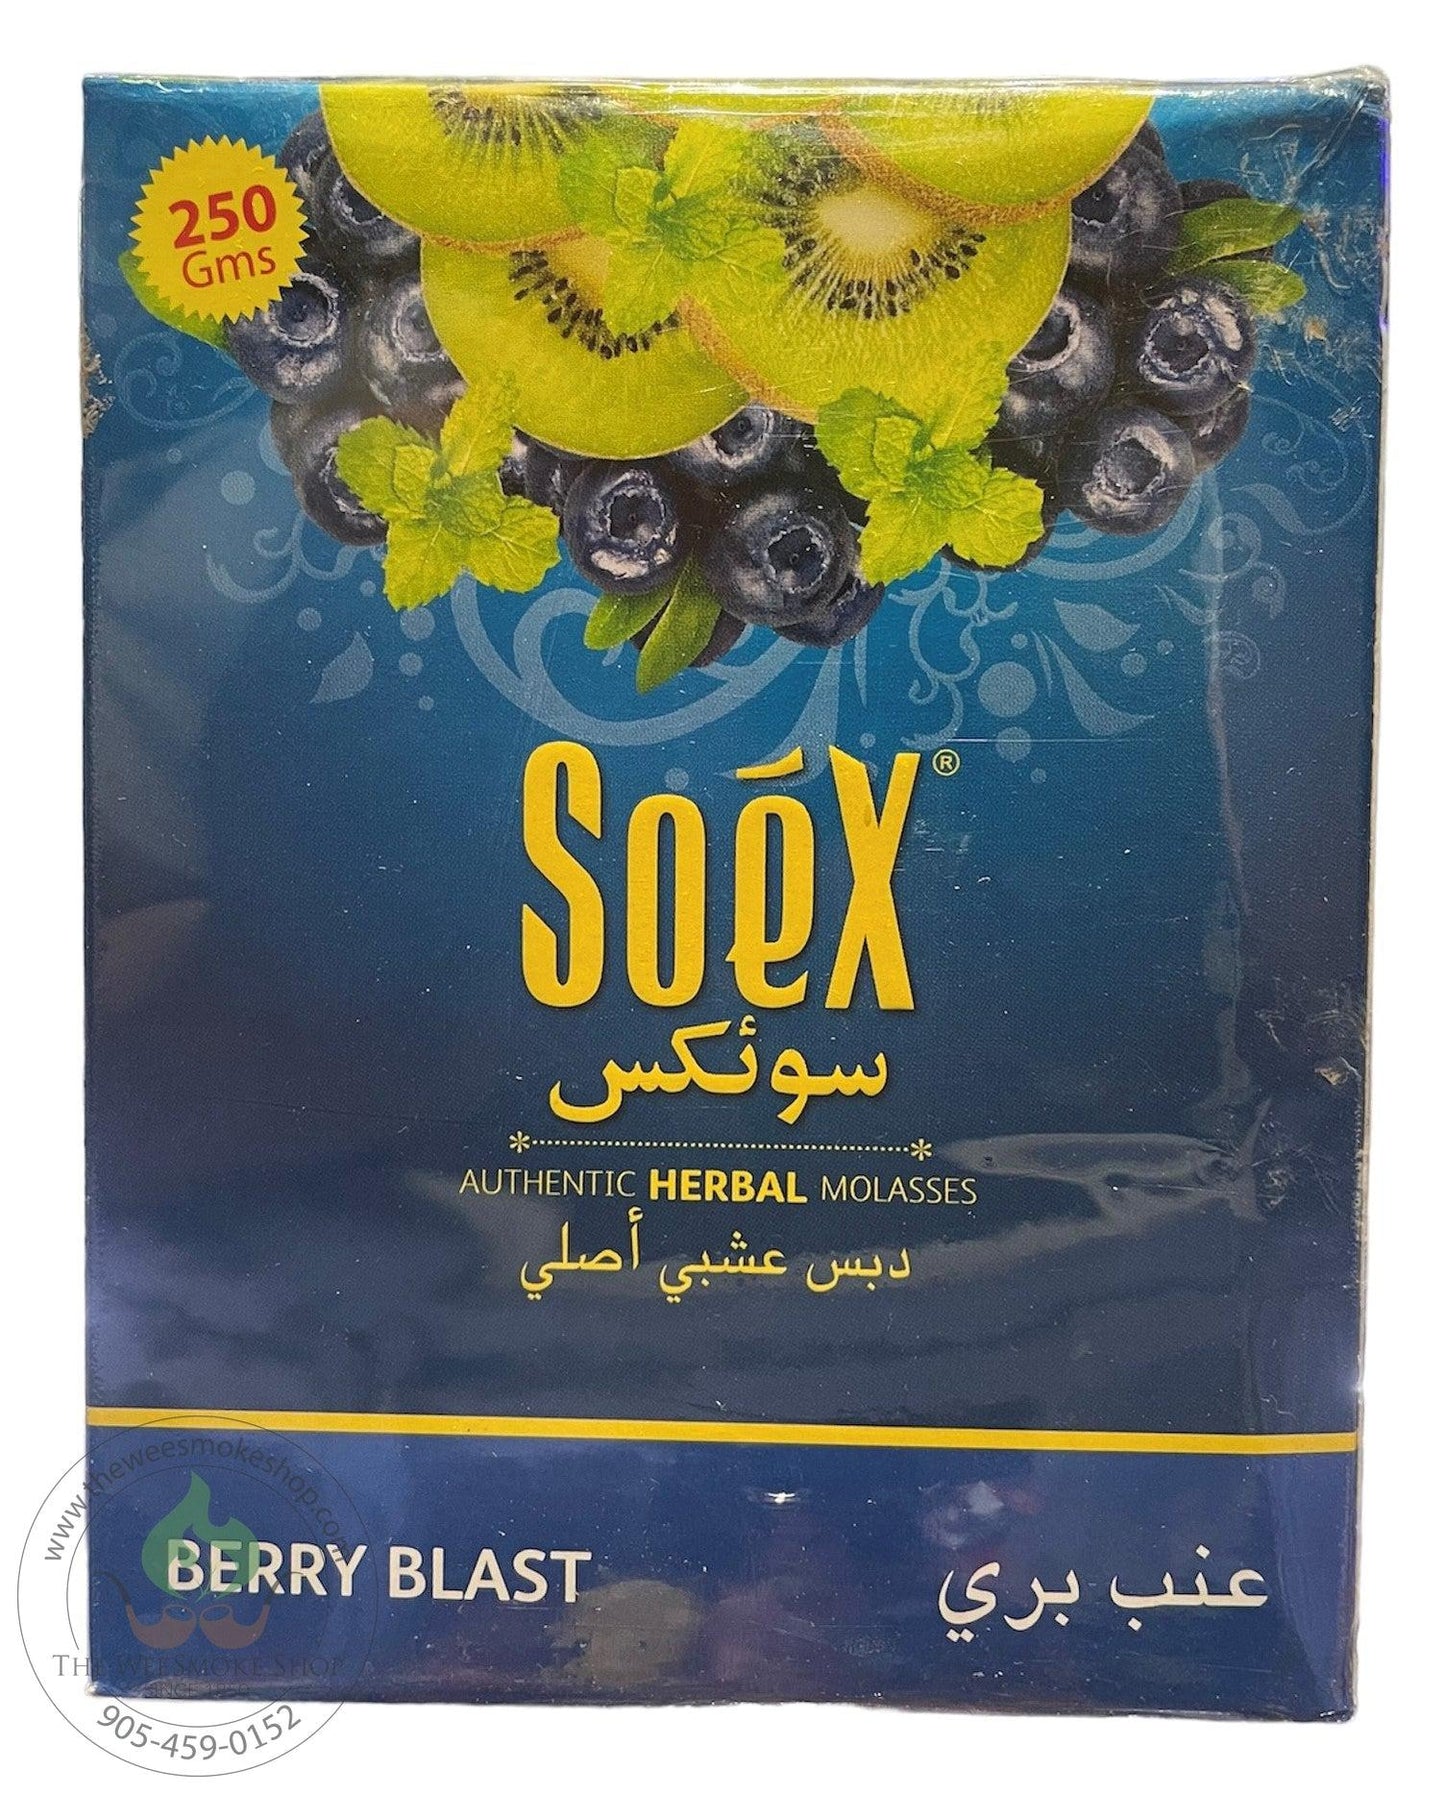 Berry Blast Soex Herbal Molasses (250g)-Hookah accessories-The Wee Smoke Shop